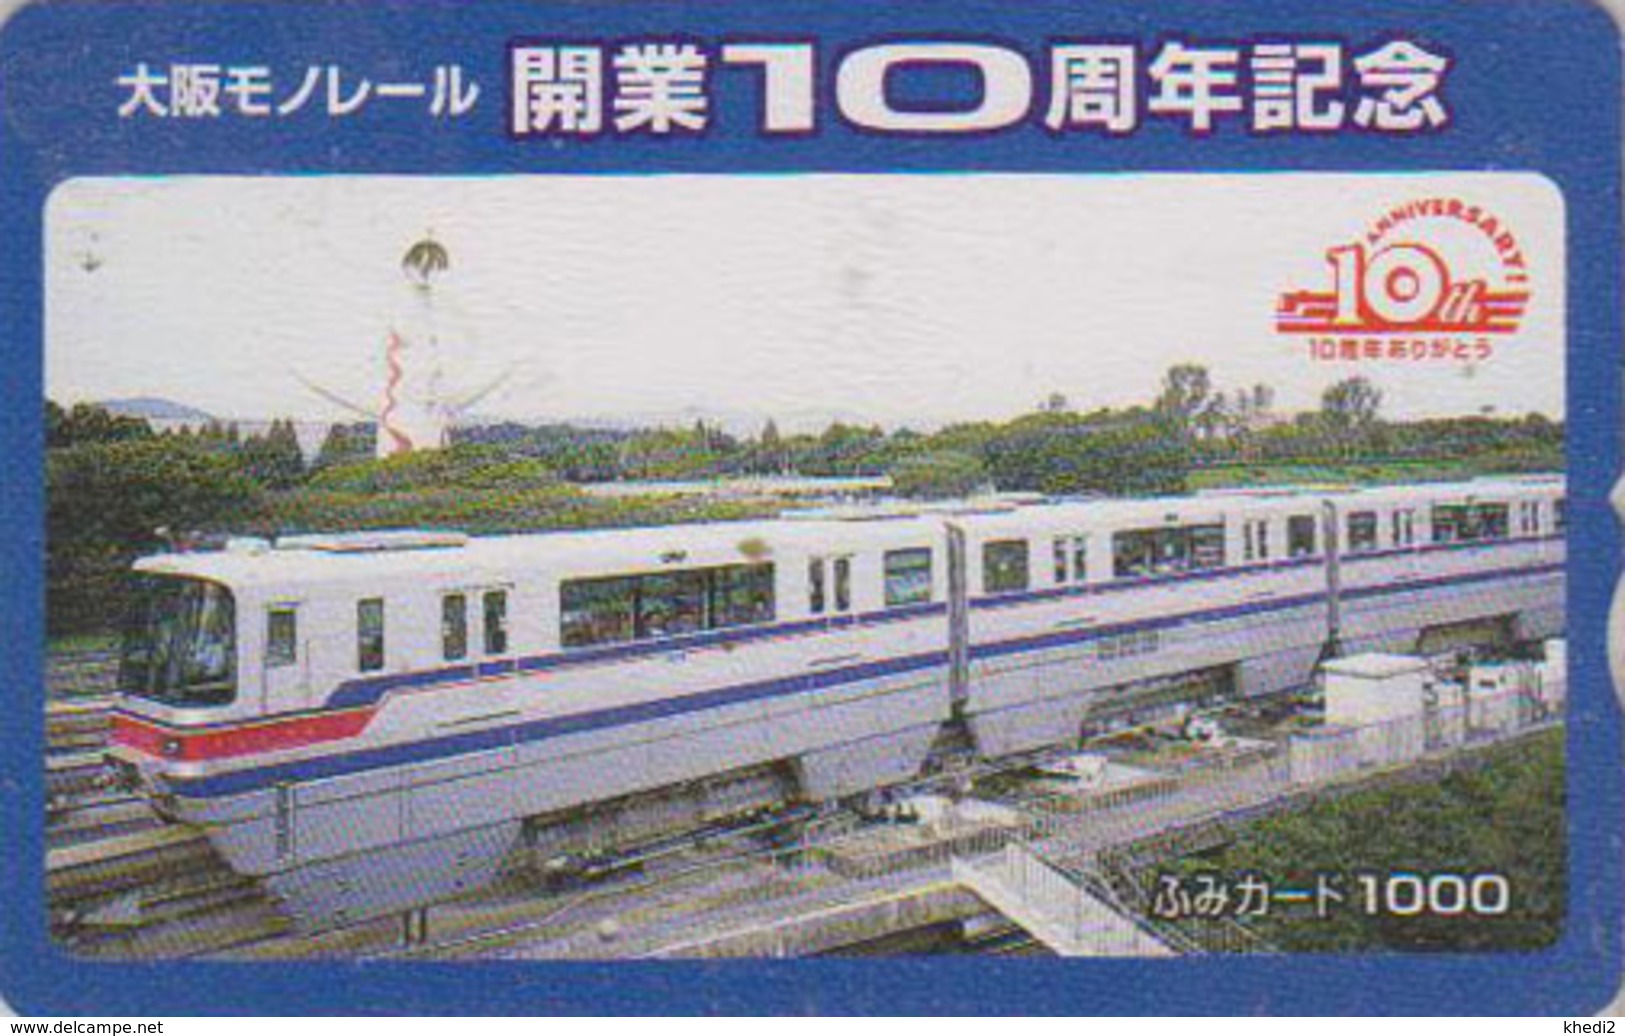 Carte Prépayée Japon - TRAIN MONORAIL - ZUG Eisenbahn - TREIN - Japan Prepaid Fumi Card - 3316 - Phares